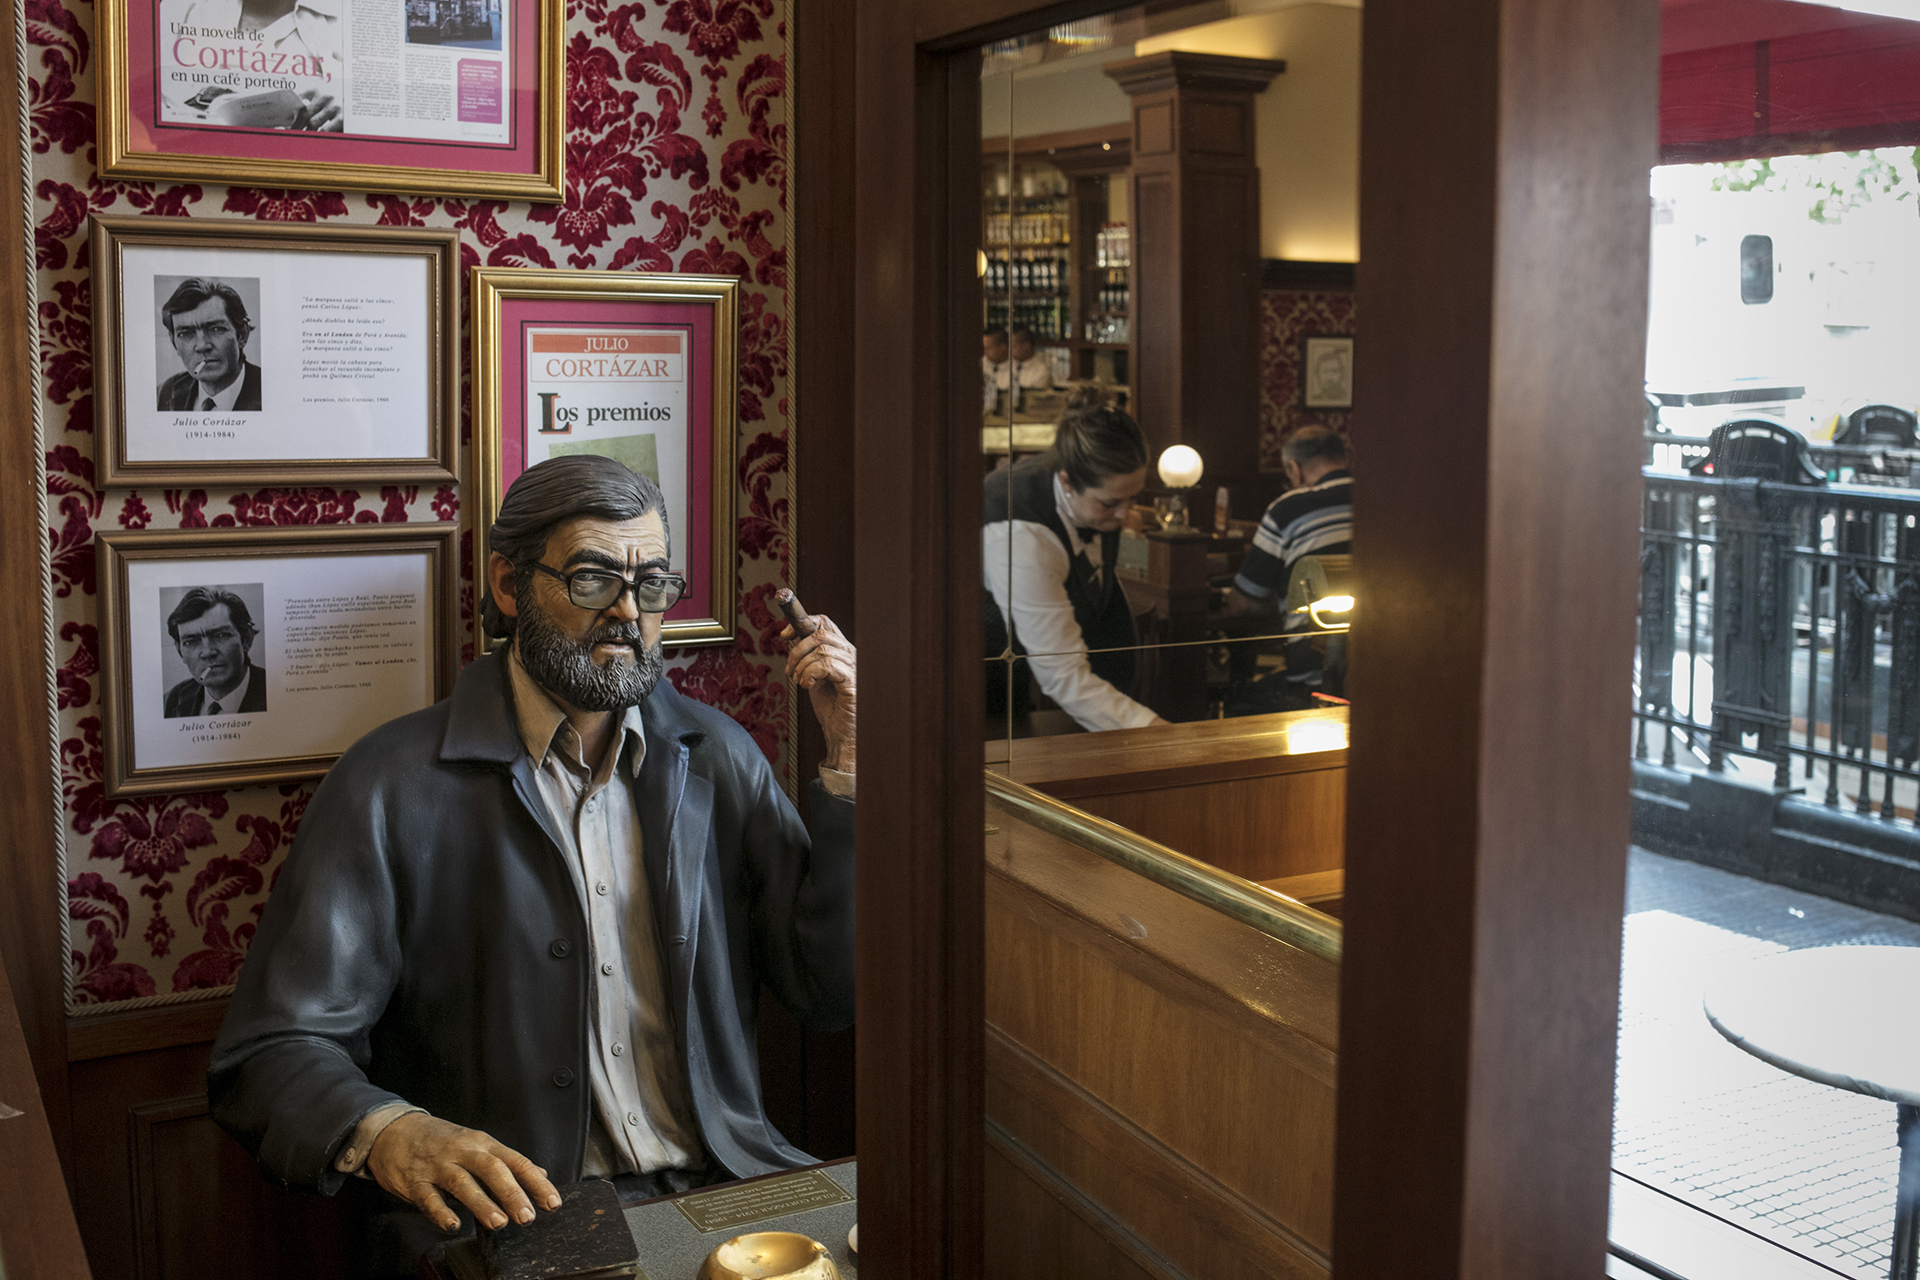 Una escultura de Cortázar en el café notable London City, en el centro porteño, presente en el libro "Los premios".  Foto Ricardo Ceppi.